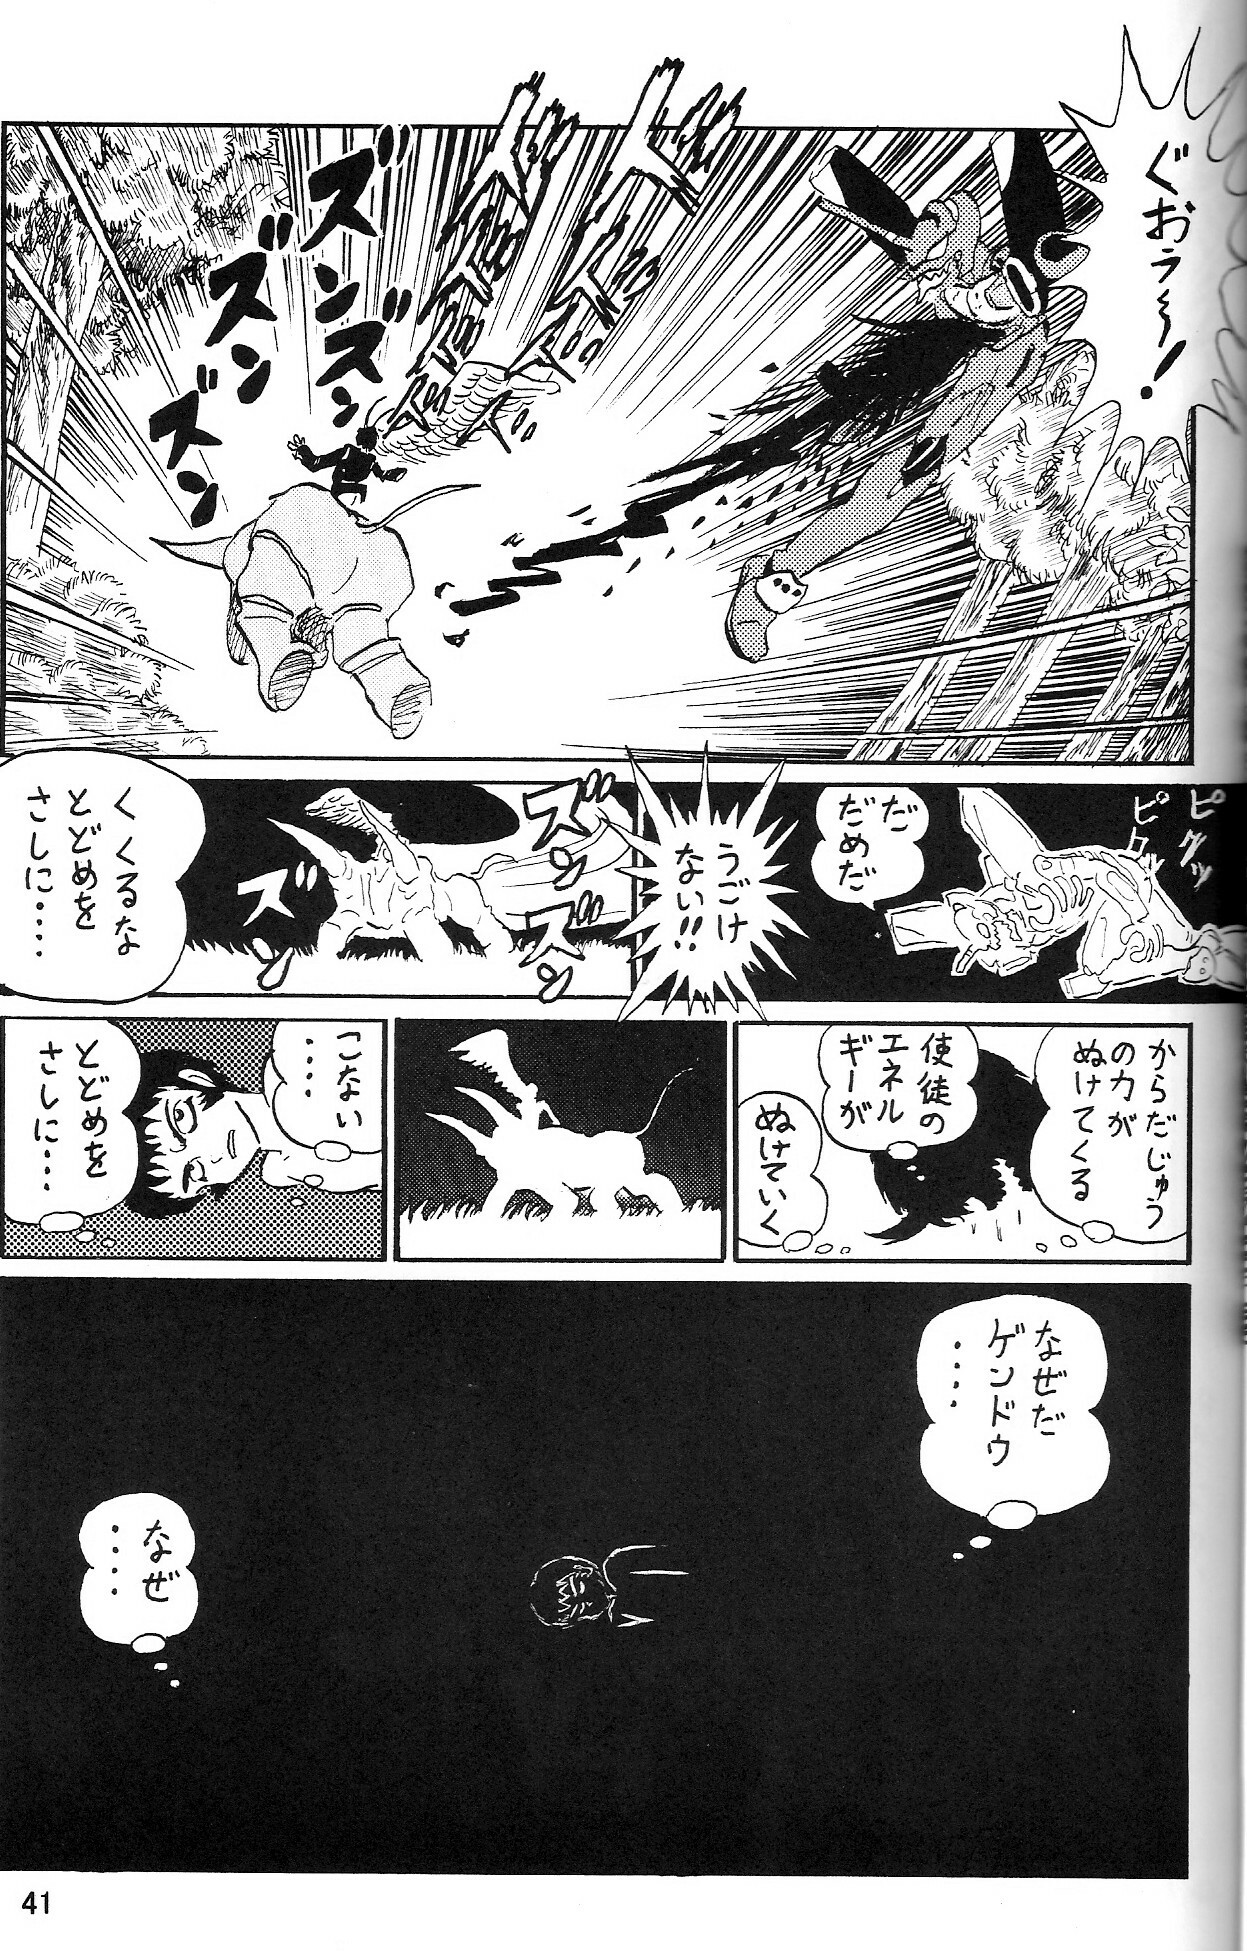 (COMIC1) [Thirty Saver Street 2D Shooting (Maki Hideto, Sawara Kazumitsu, Yonige-ya No Kyou)] Second Uchuu Keikaku 2 (Neon Genesis Evangelion) page 41 full